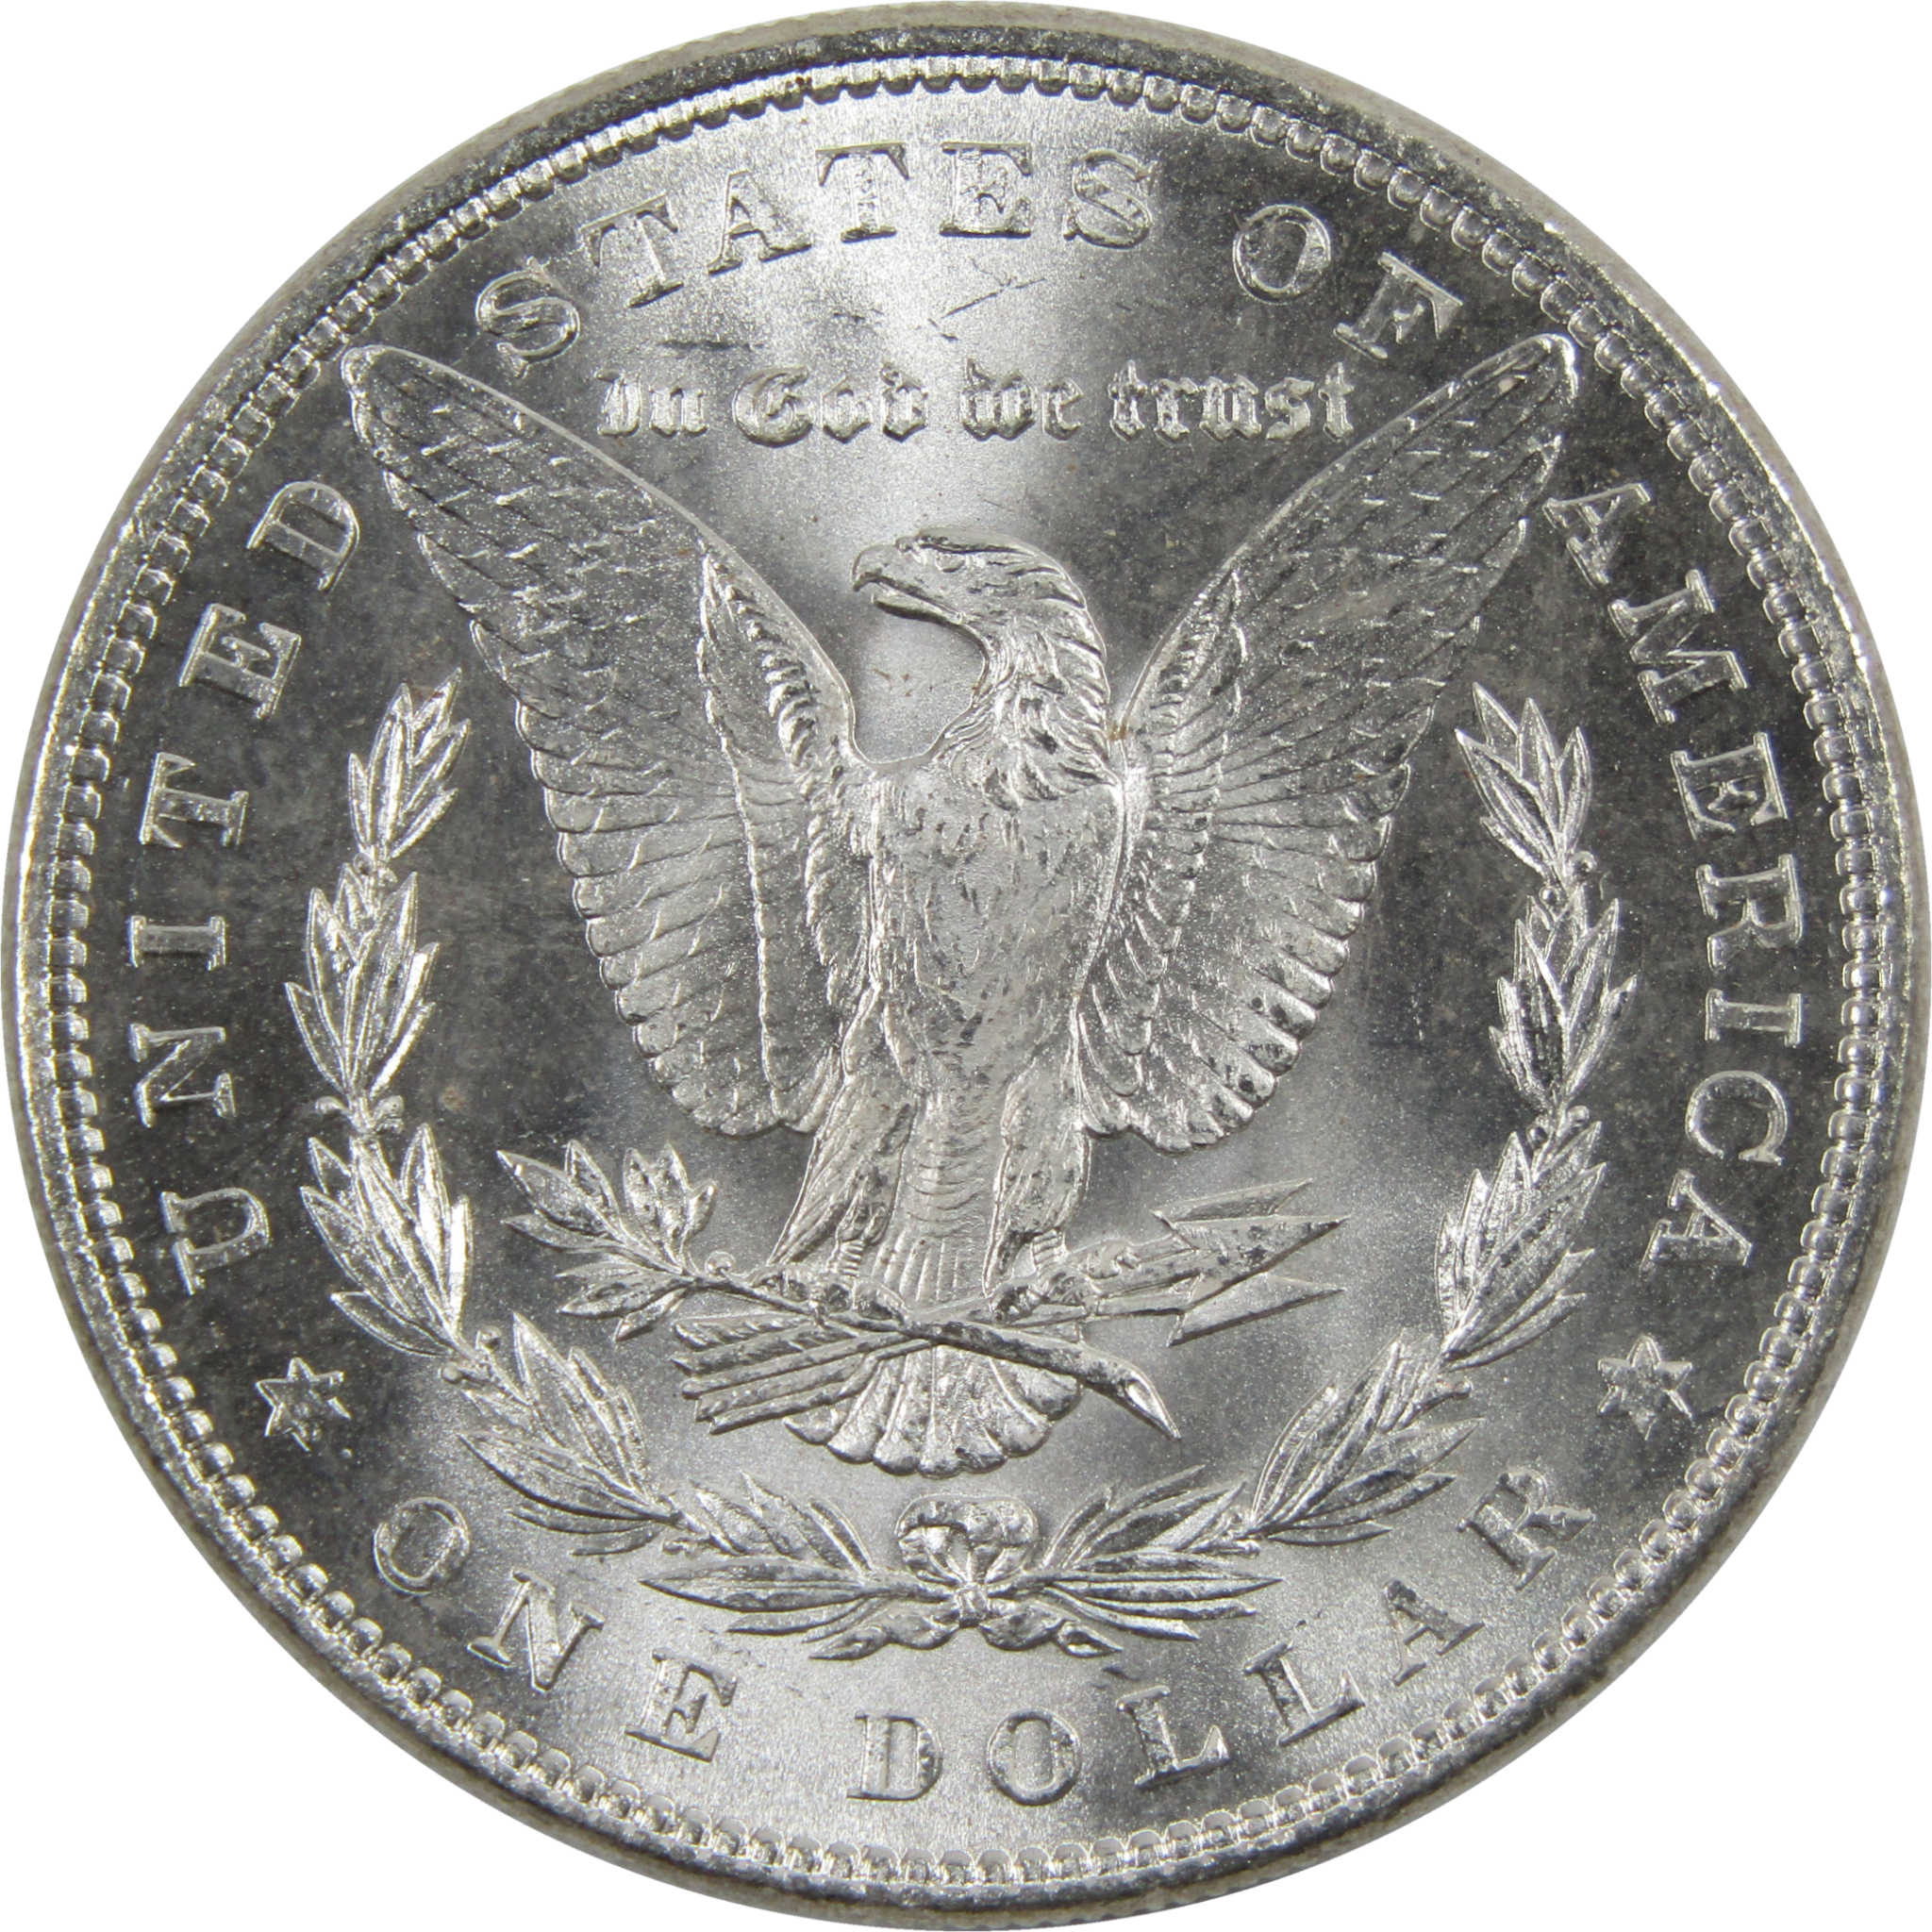 1884 Morgan Dollar BU Uncirculated 90% Silver $1 Coin SKU:I6015 - Morgan coin - Morgan silver dollar - Morgan silver dollar for sale - Profile Coins &amp; Collectibles